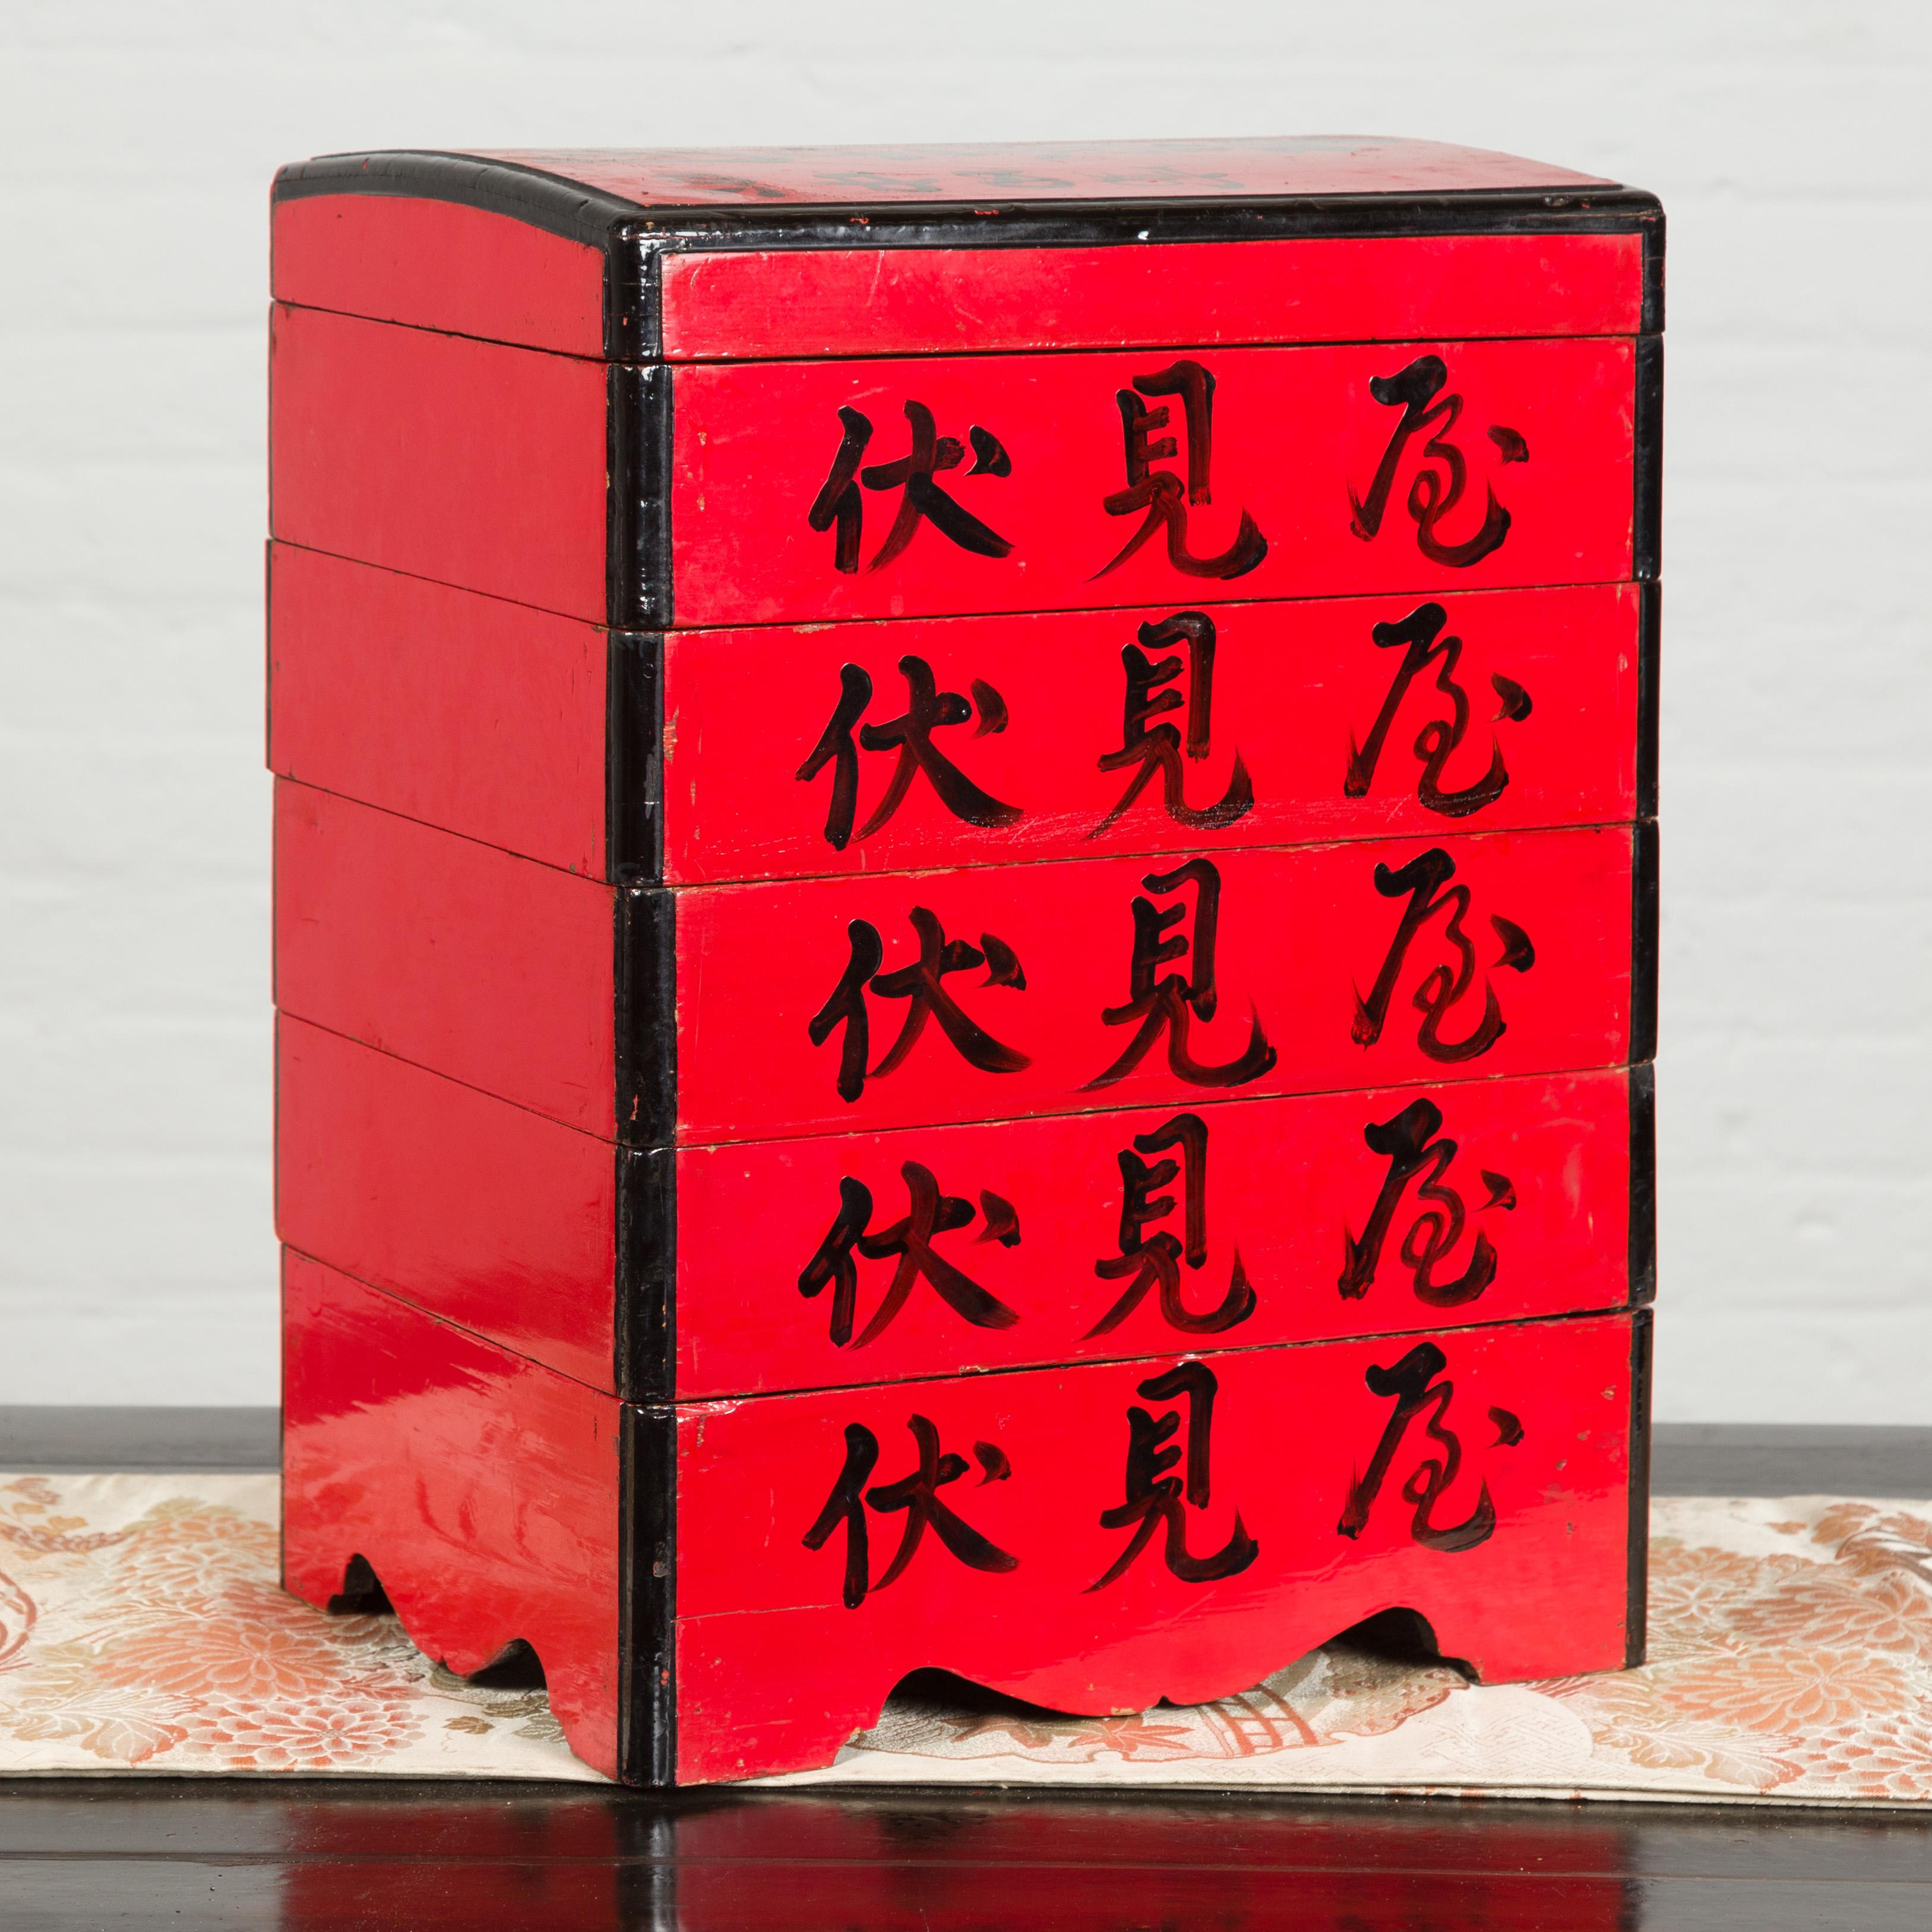 Eine japanische Kiste aus der Taisho-Periode mit rotem Lack und Kalligraphie aus dem frühen 20. Diese rot lackierte Lebensmittelbox wurde in den frühen Jahren des 20. Jahrhunderts in Japan hergestellt und zeichnet sich durch einen gewölbten Deckel